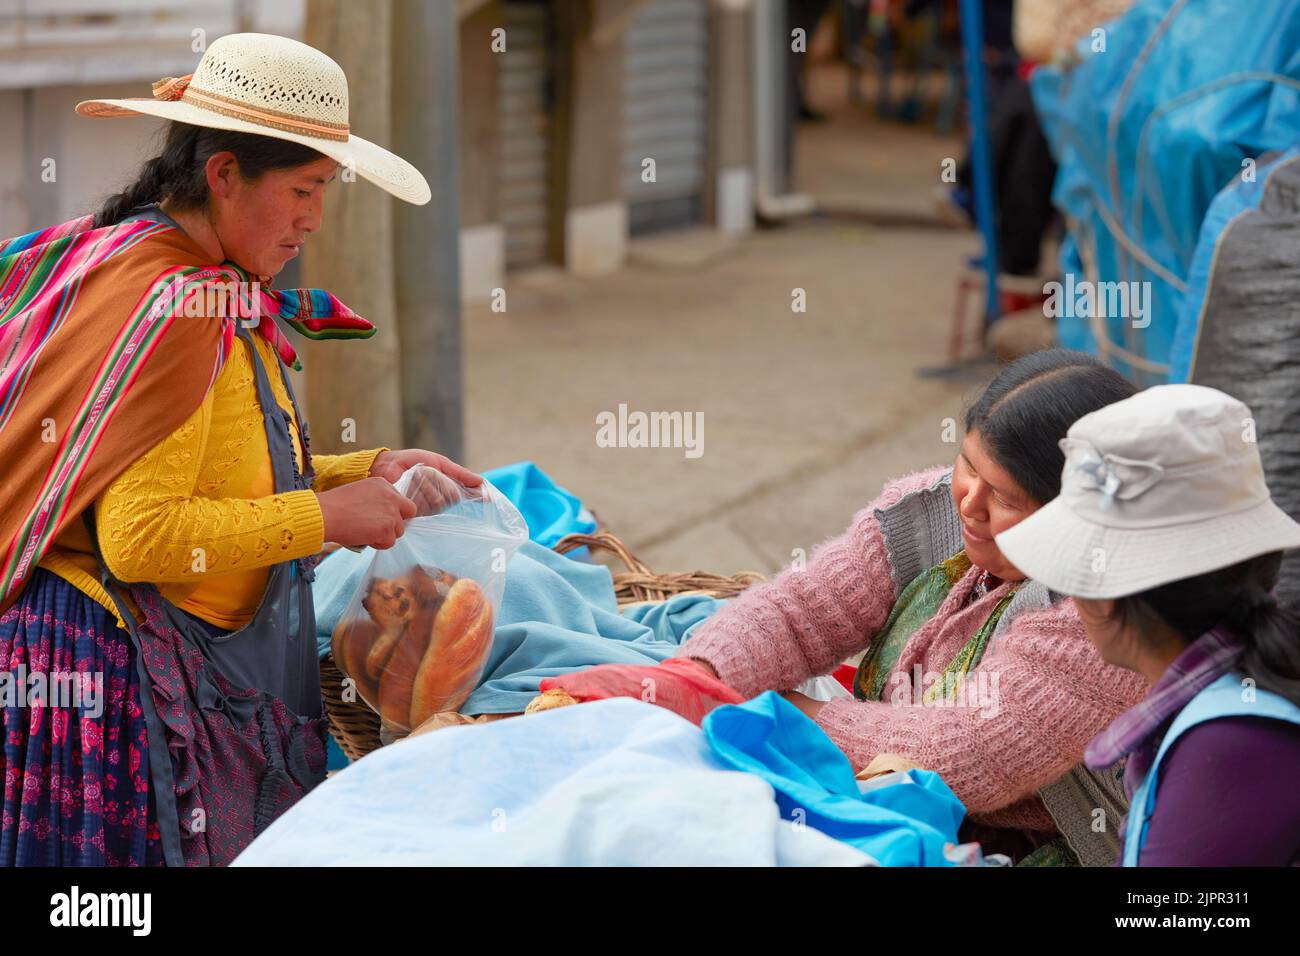 Une Chola bolivienne achète du pain dans un stand au marché de la rue Copacabana, lac Titicaca, province de la Paz, Bolivie. Banque D'Images